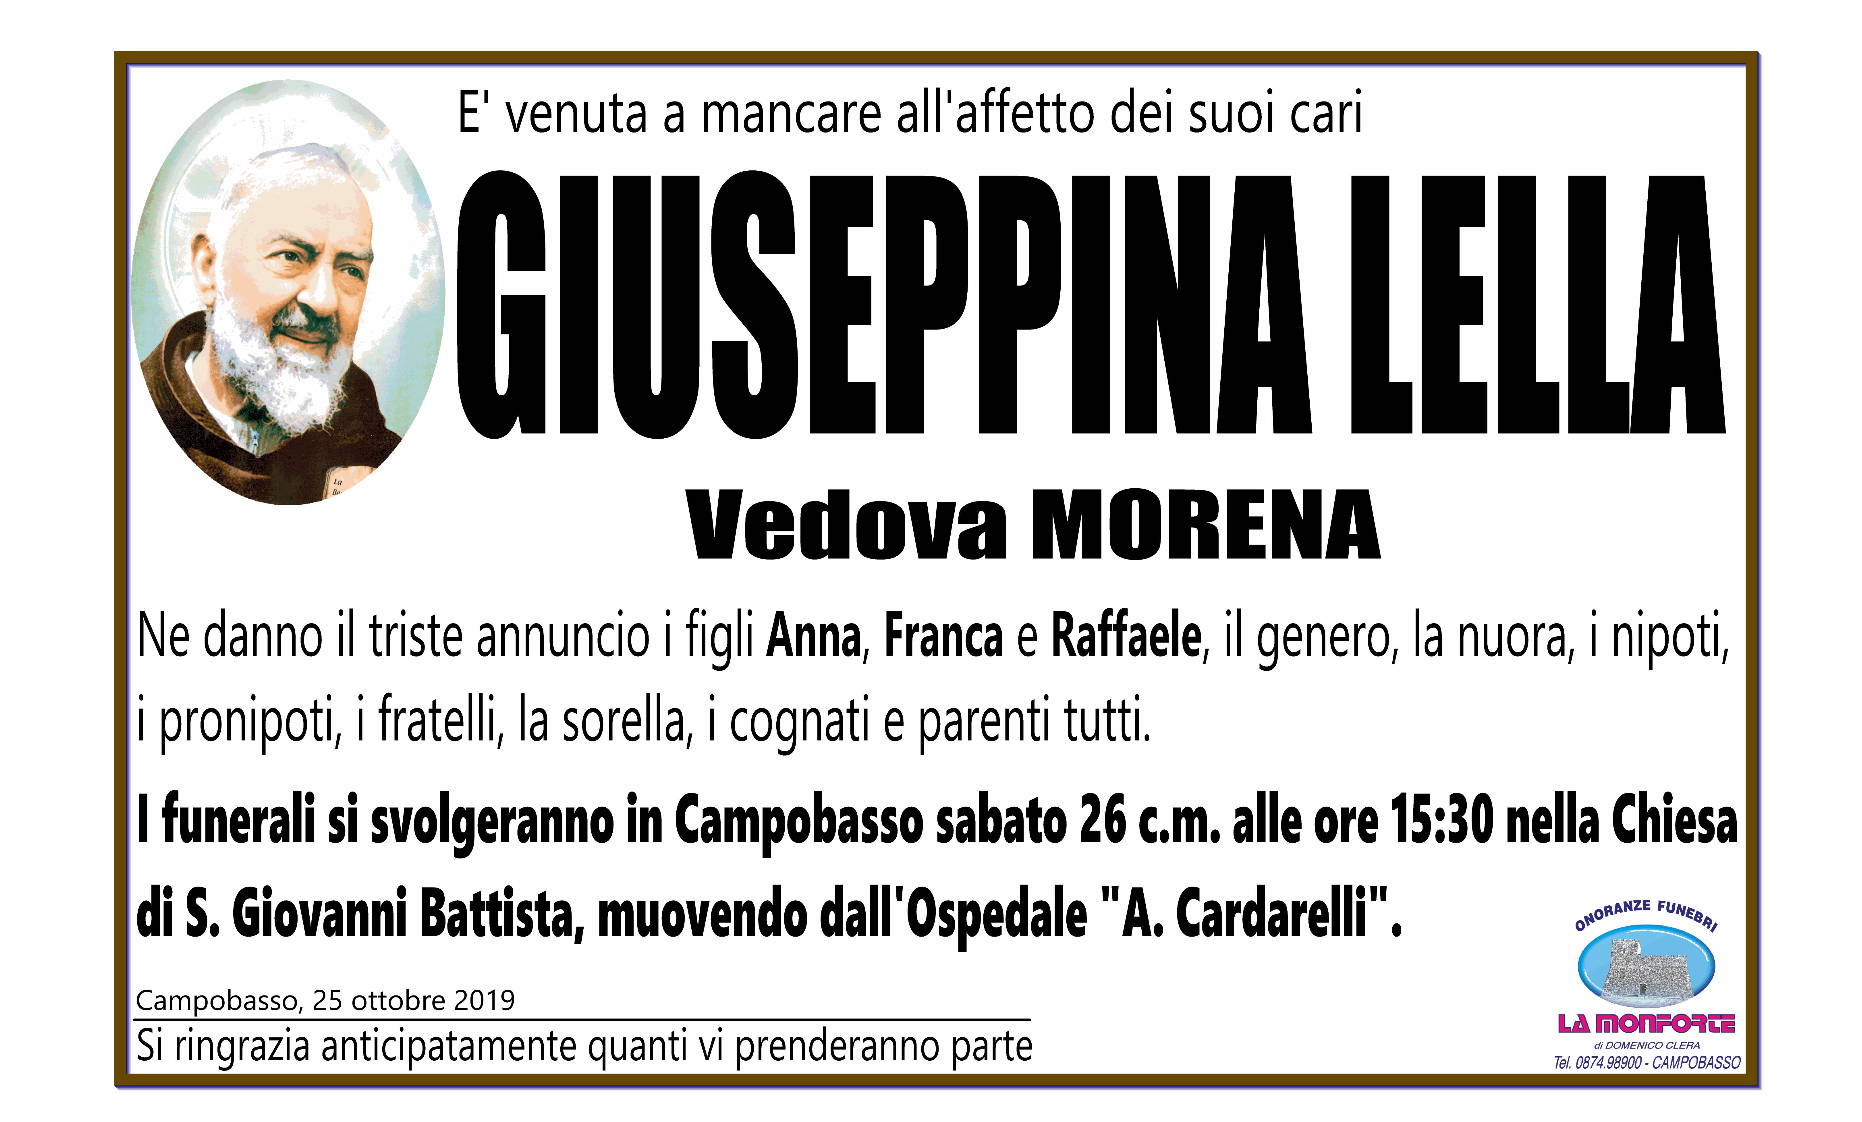 Giuseppina Lella